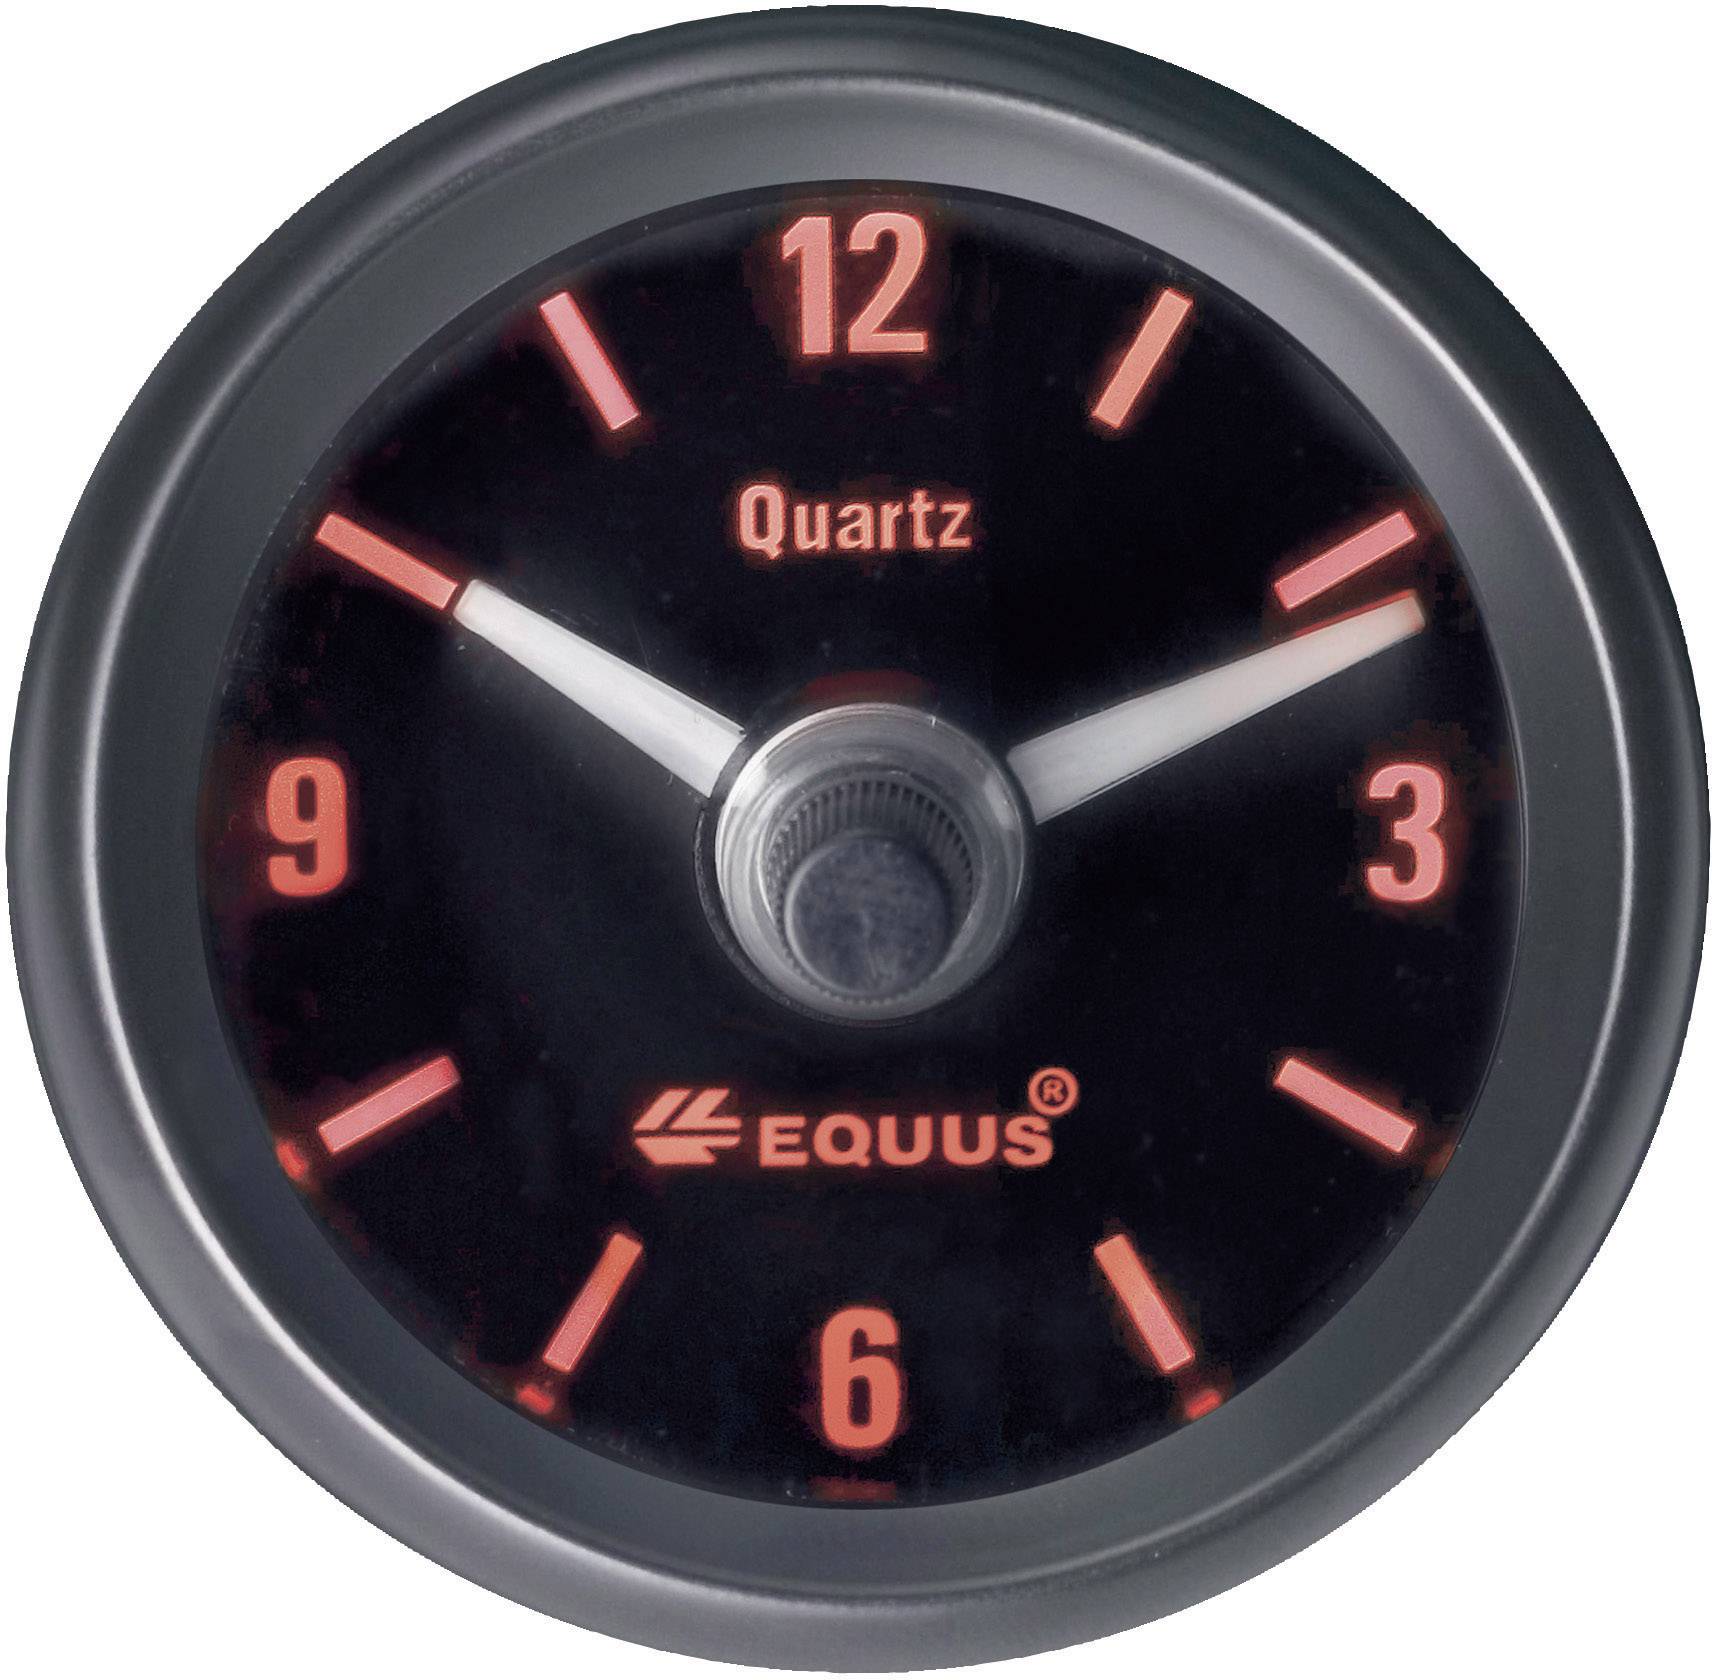 Equus 656789 Kfz Einbauinstrument Quarz-Uhr analog 4 LEDs Blau, Grün, Gelb,  Rot 52 mm kaufen